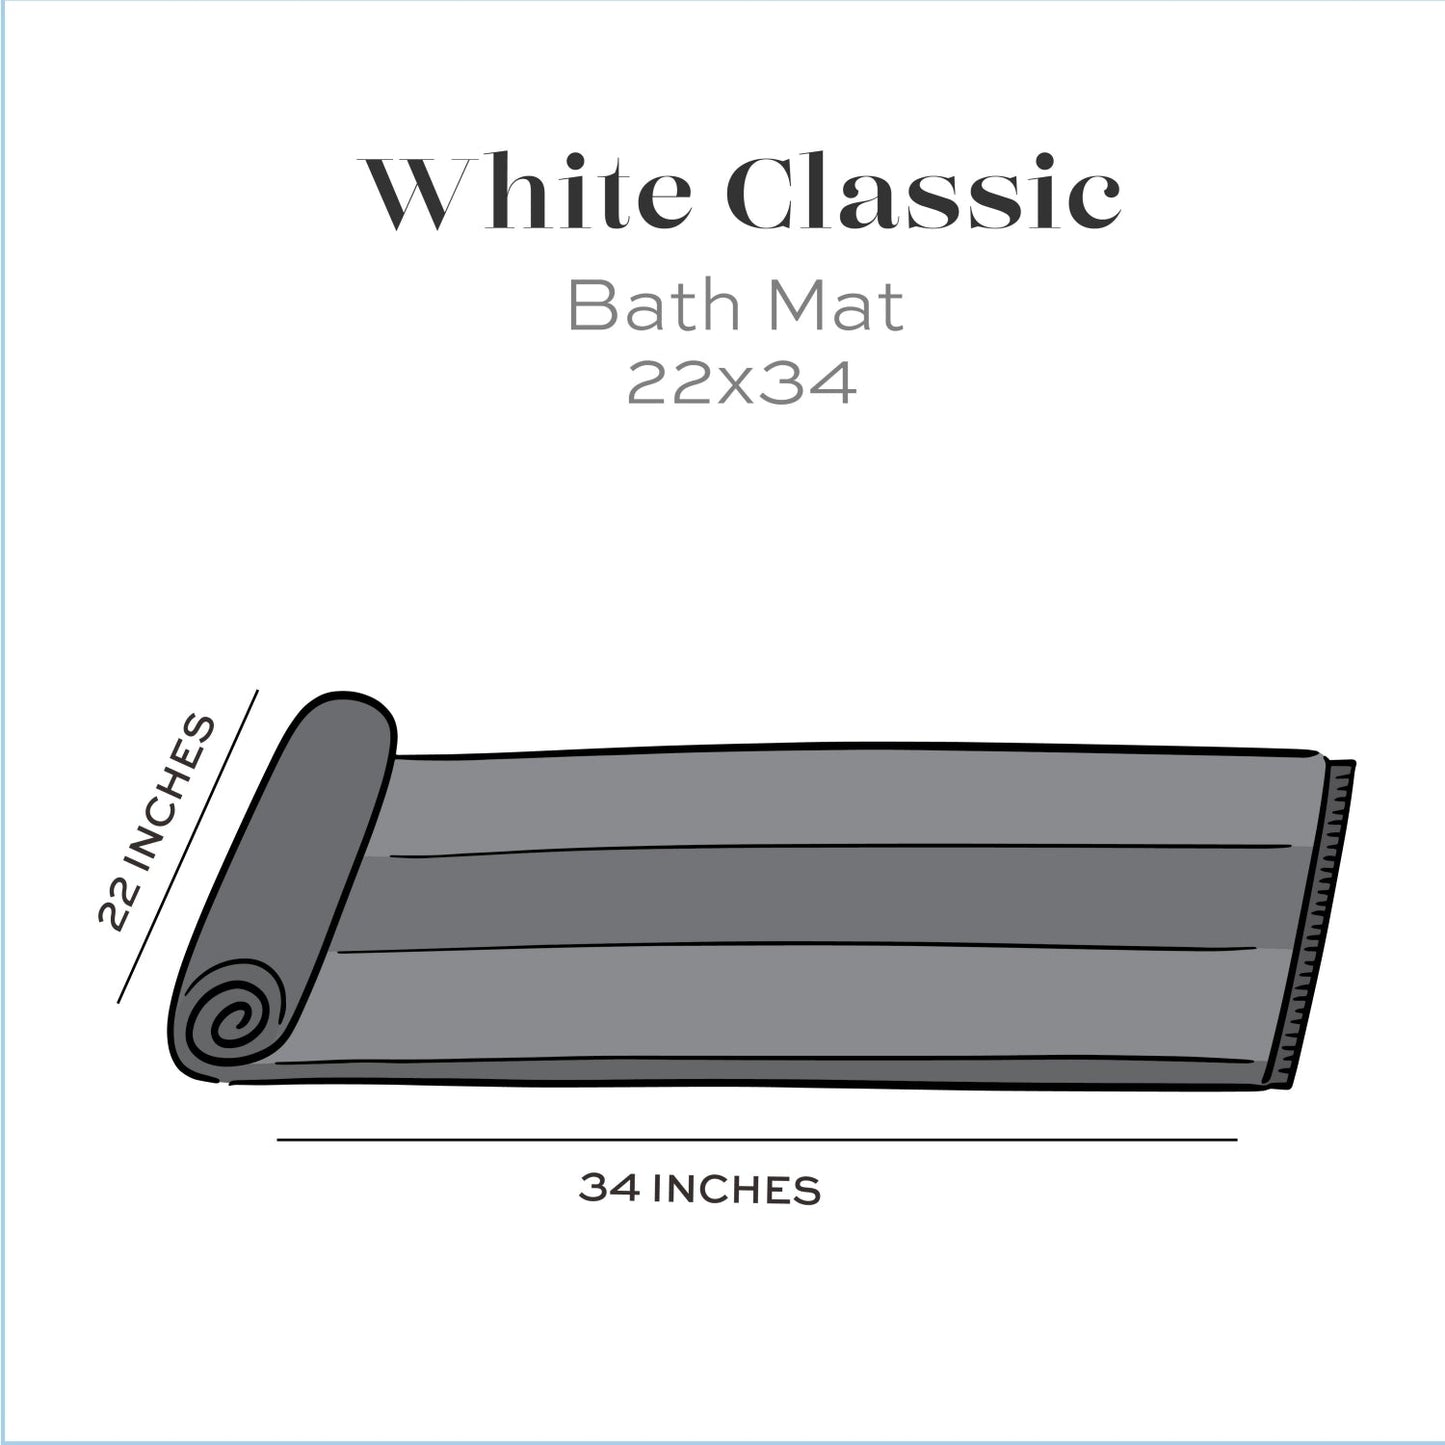 22x34 bath mat